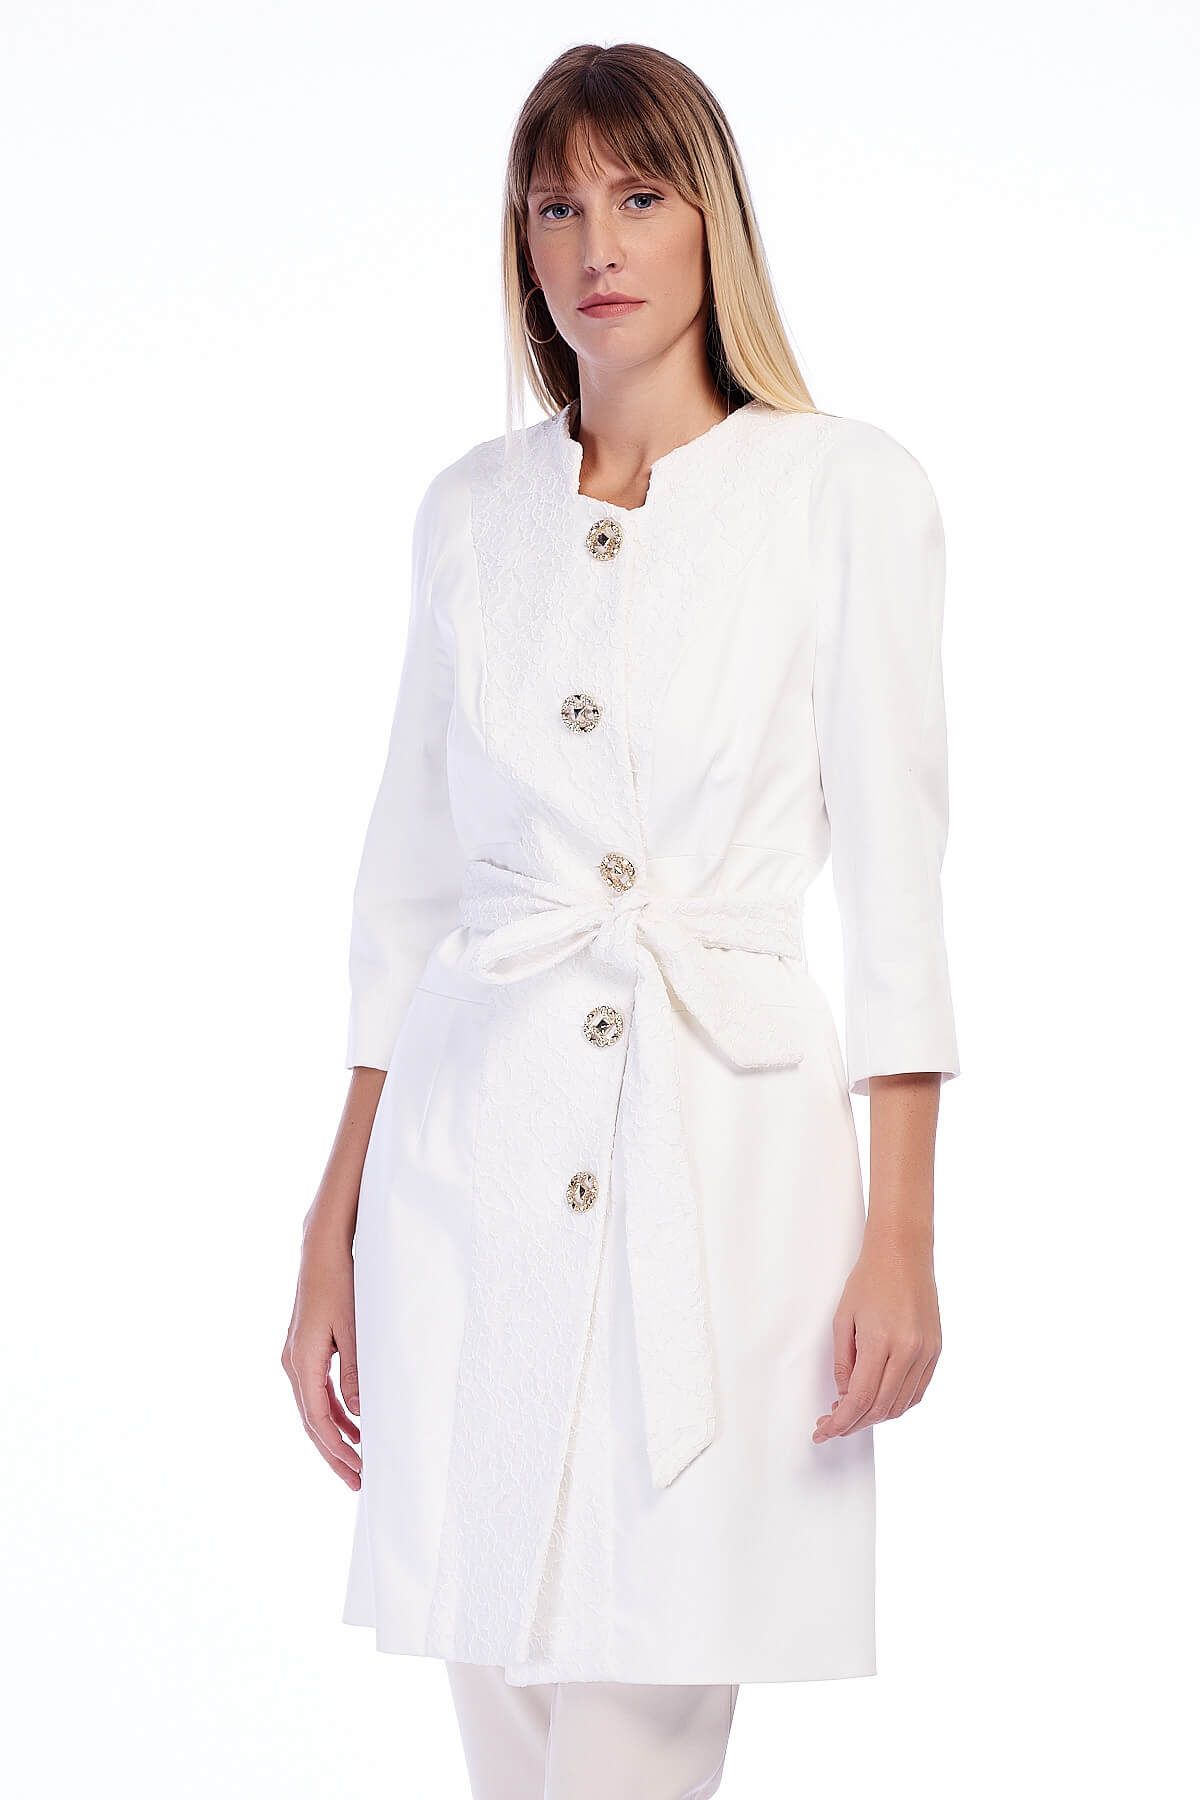 Balizza Kadın Beyaz Ceket M14Y460587